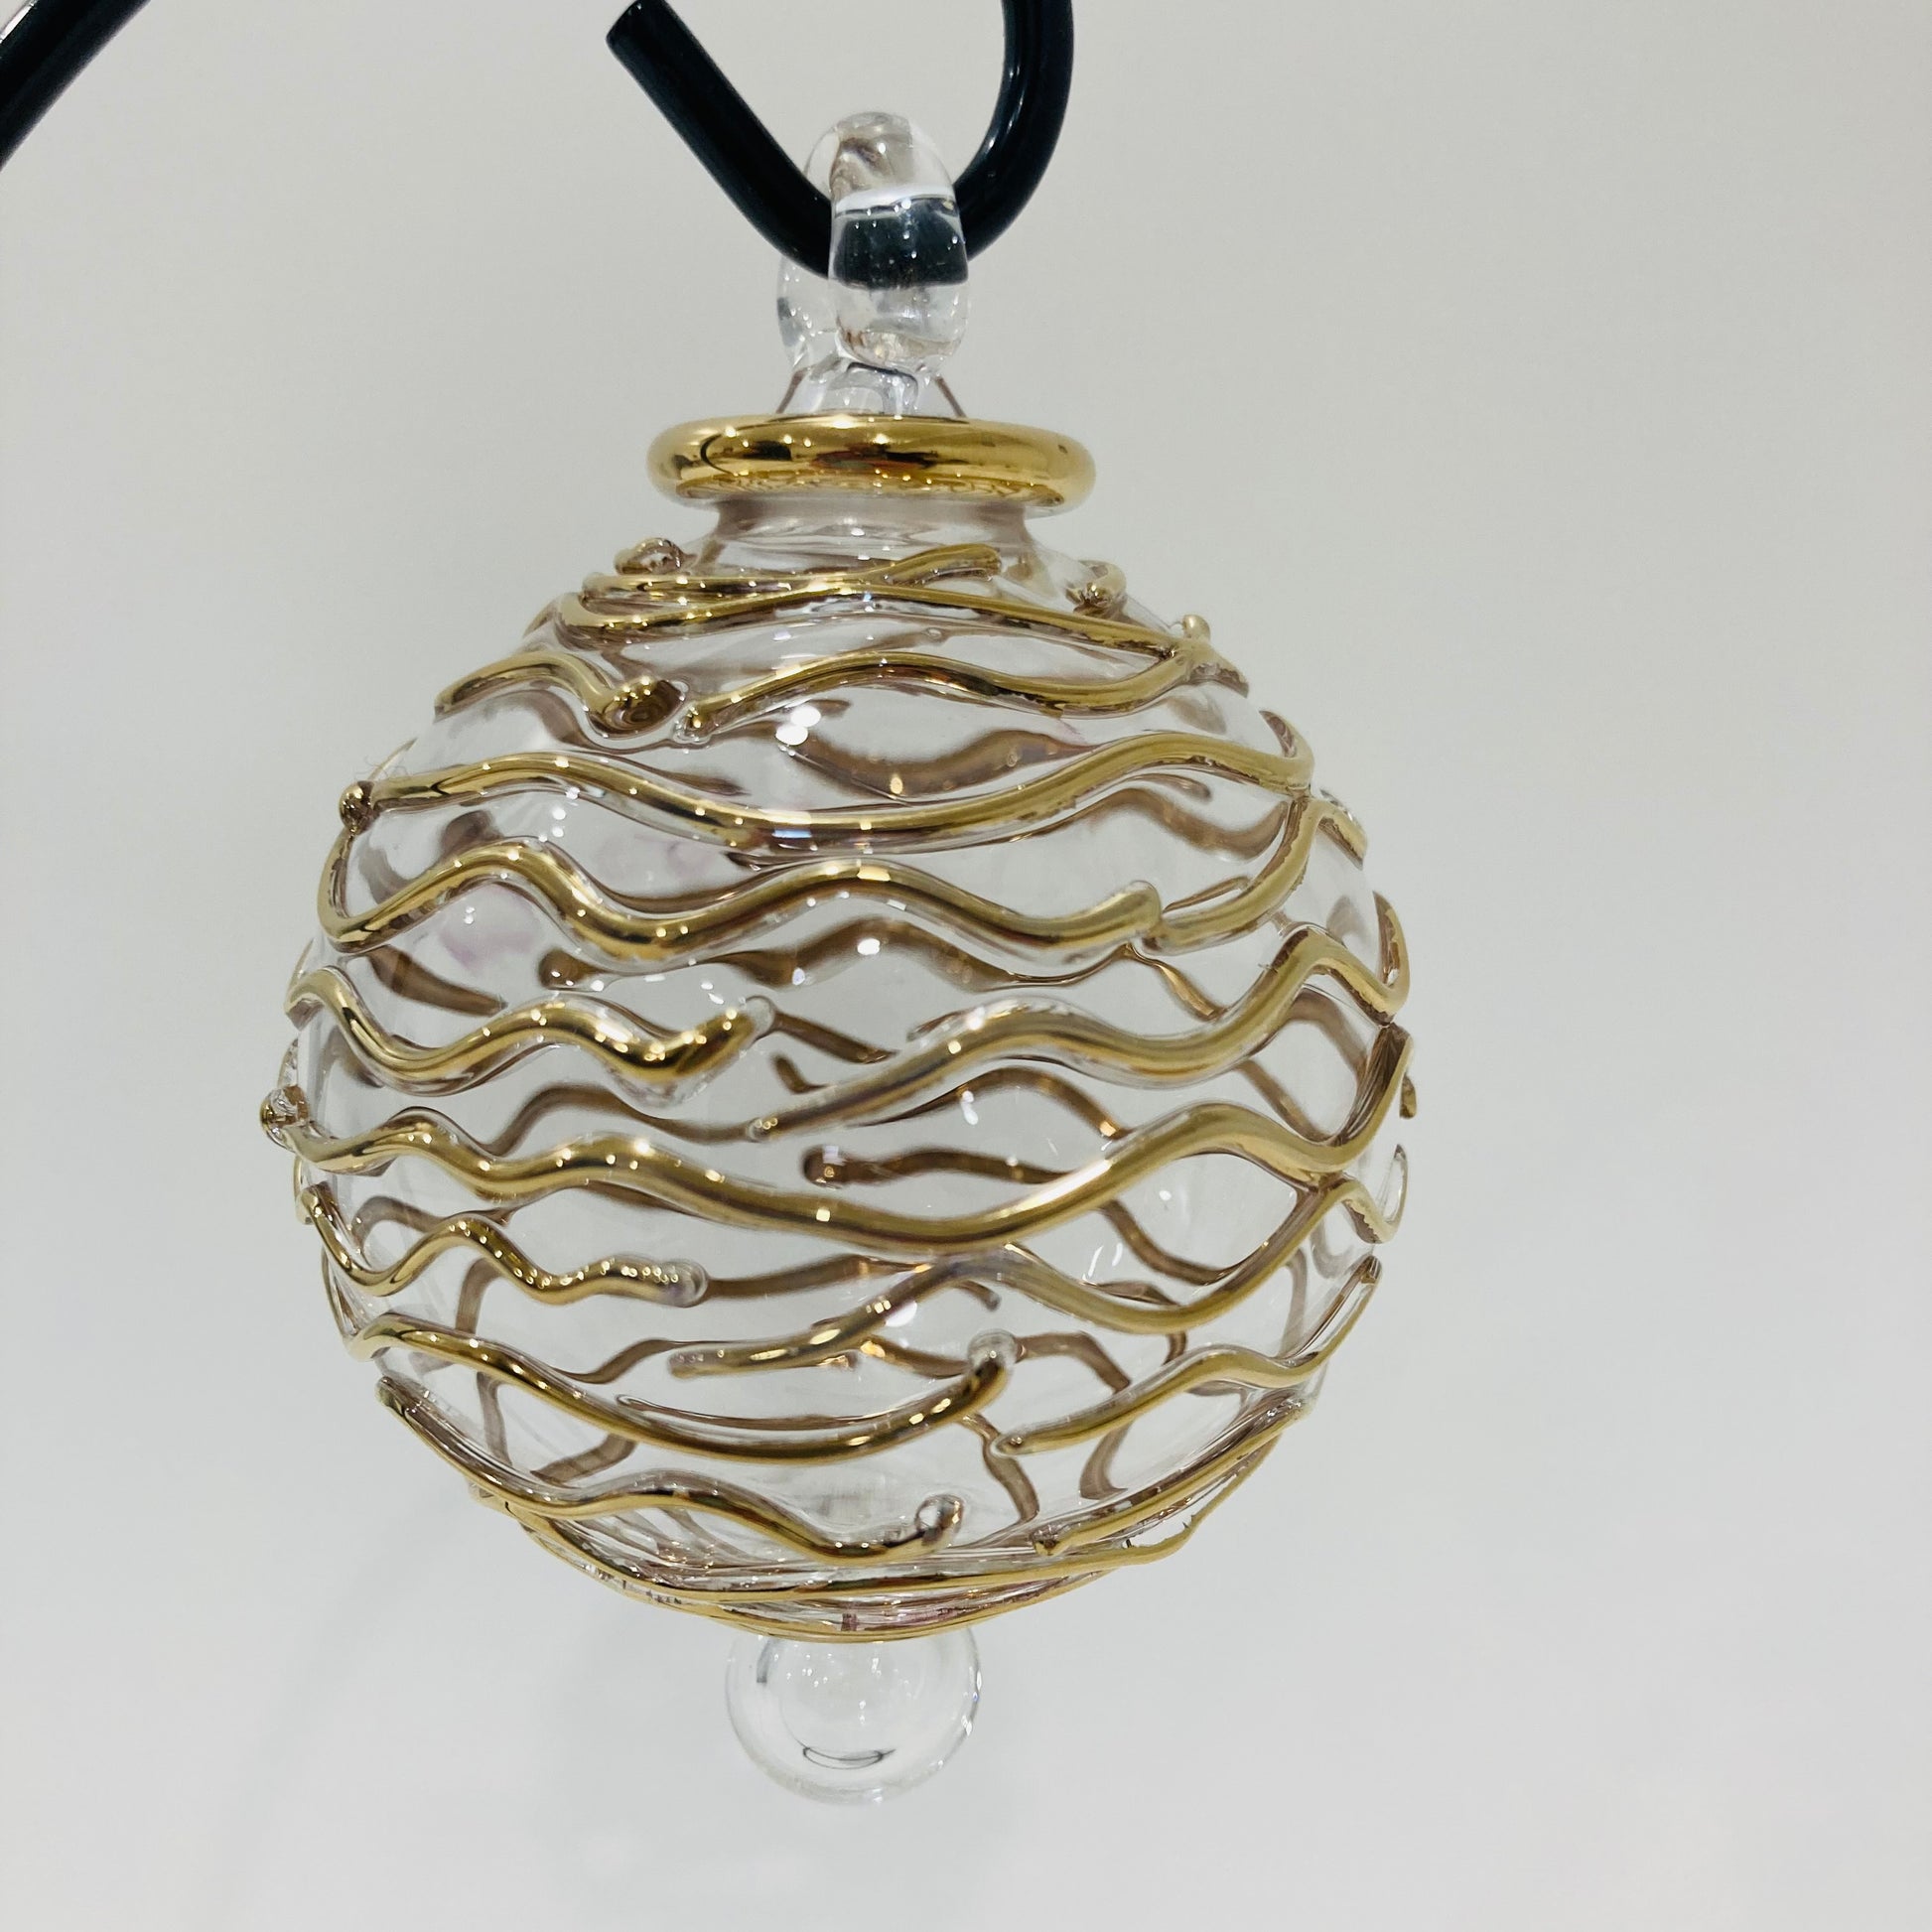 Blown Glass Ornament - Gold Spiral